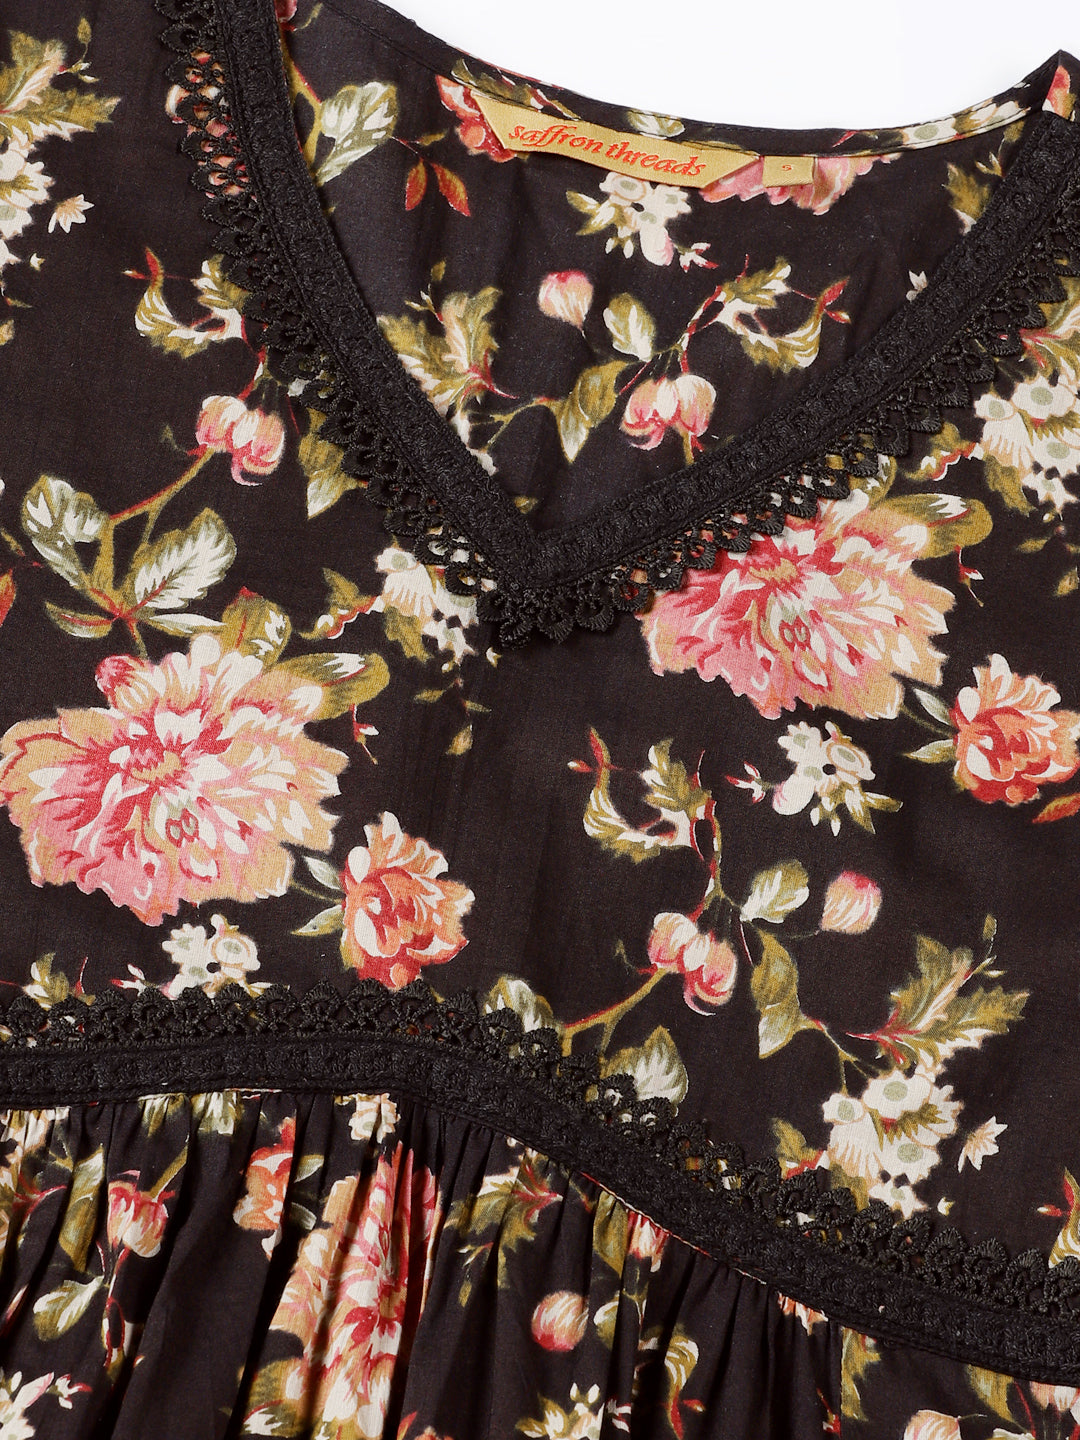 Black Floral Print Cotton Midi Dress with Lace Details